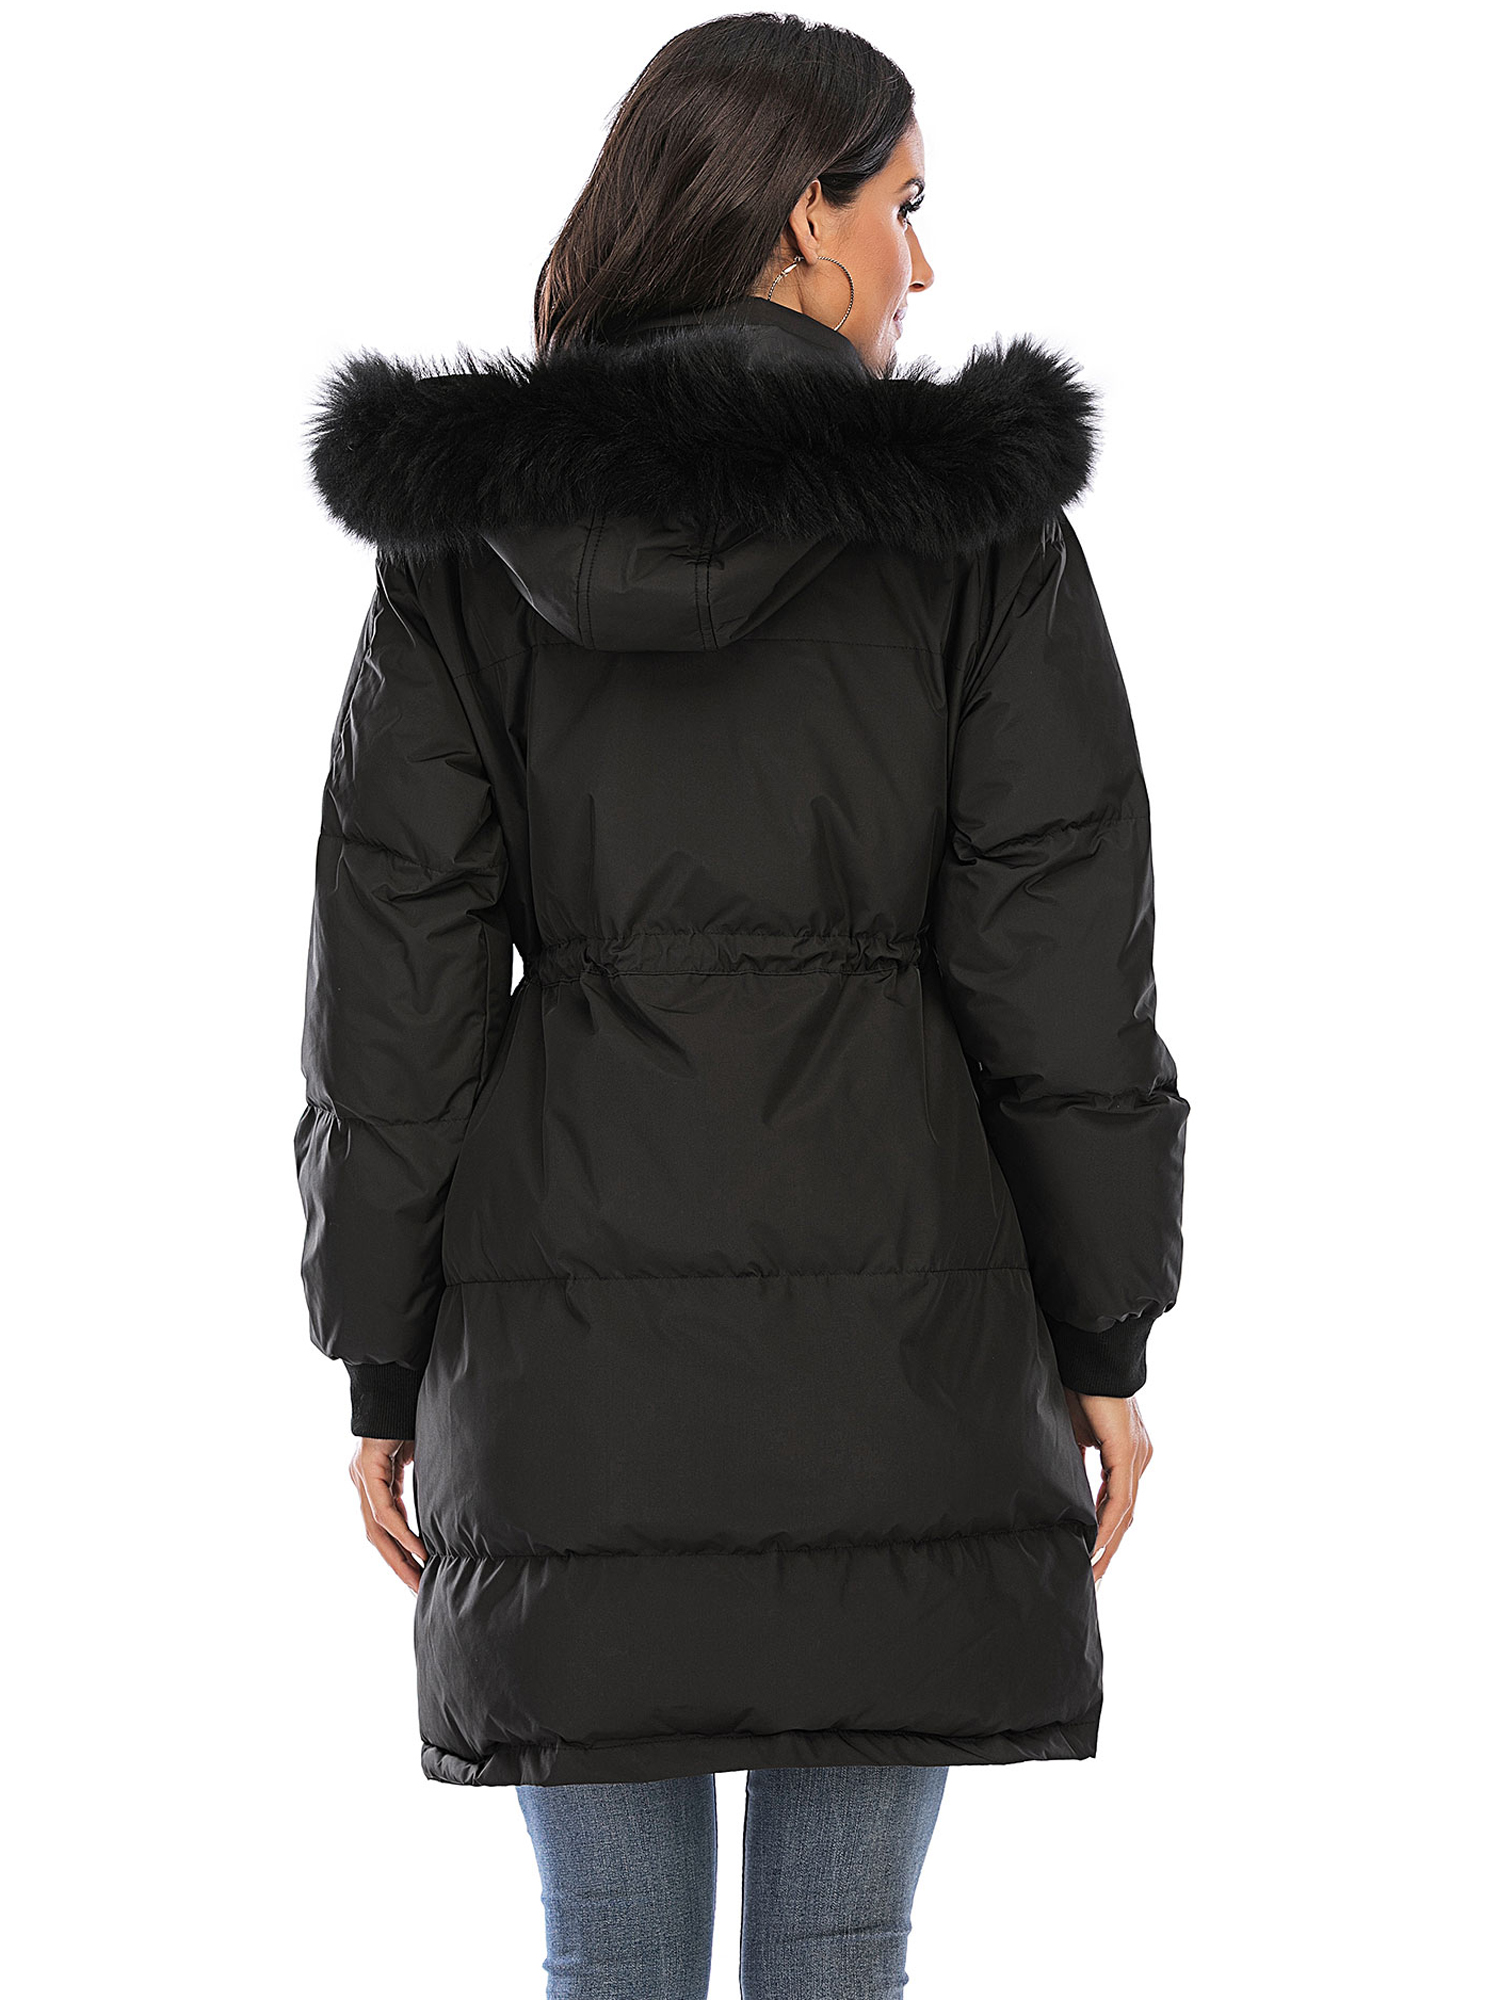 LELINTA Women Winter Plus Size Long Hoodie Coat Warm Jacket Zipper Parka Overcoats Raincoat Active Outdoor Trench Coat - image 4 of 7